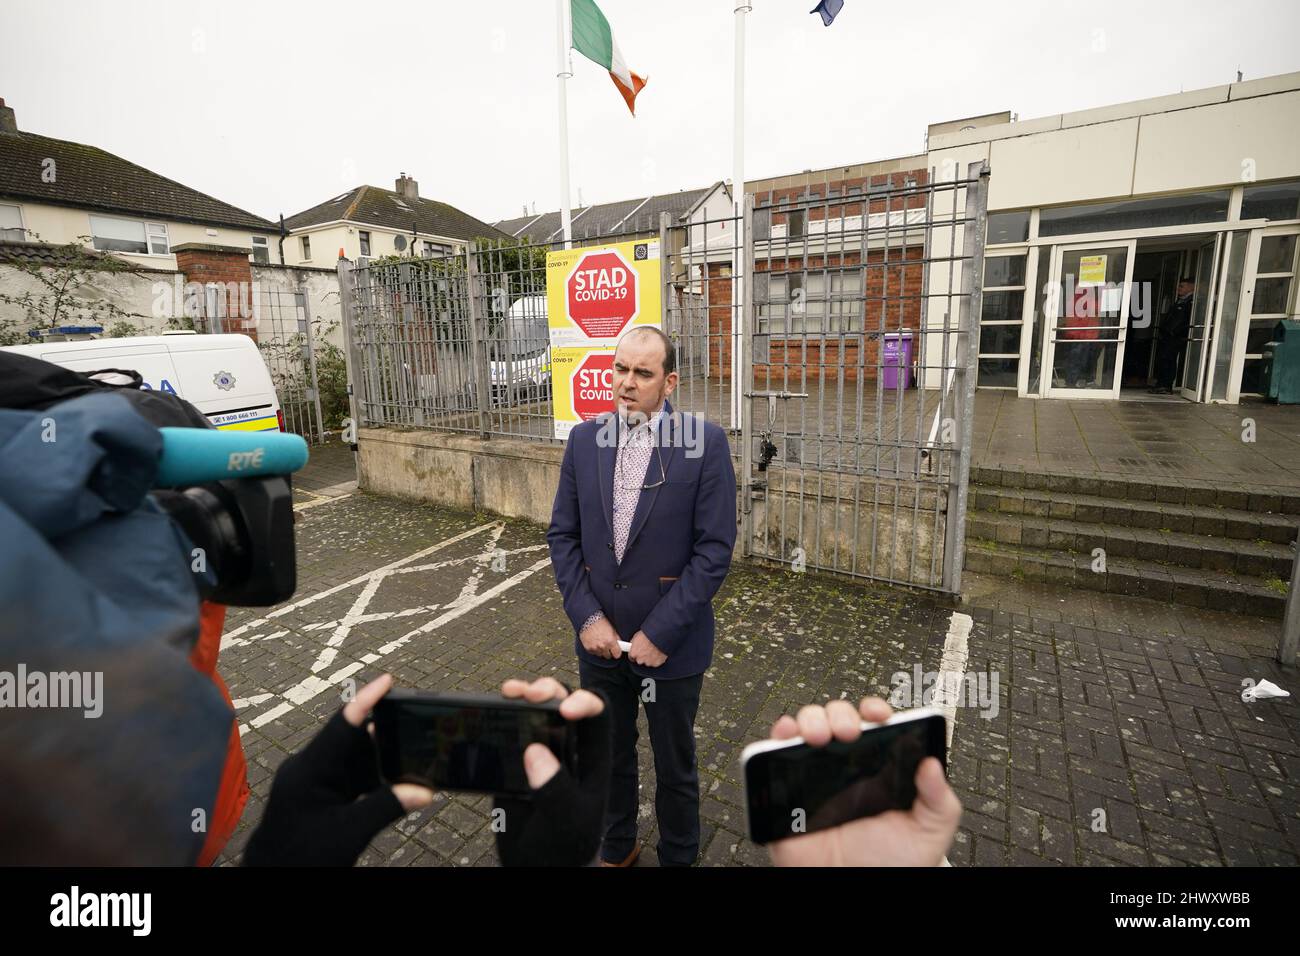 Desmond Wisley s'adresse aux médias lorsqu'il quitte le tribunal de district de Tallaght, à Dublin, où il a été accusé de conduite dangereuse et de dommages criminels après qu'un gros camion s'est écrasé dans les portes de l'ambassade de Russie lundi. Date de la photo: Mardi 8 mars 2022. Banque D'Images